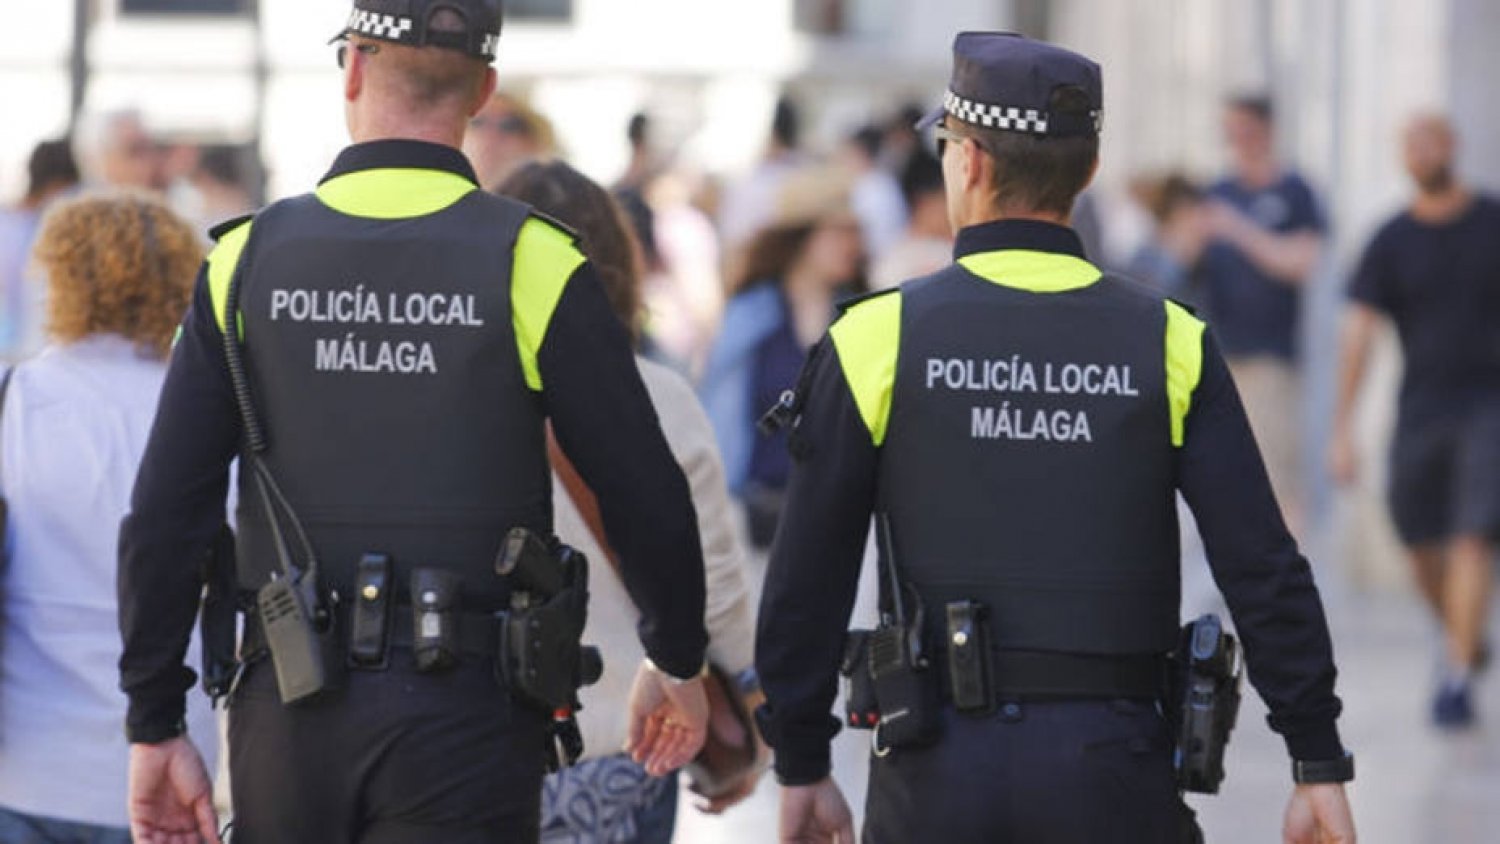 La Policía Local tramita 75 denuncias en materia de control de ruidos y convivencia en la última semana